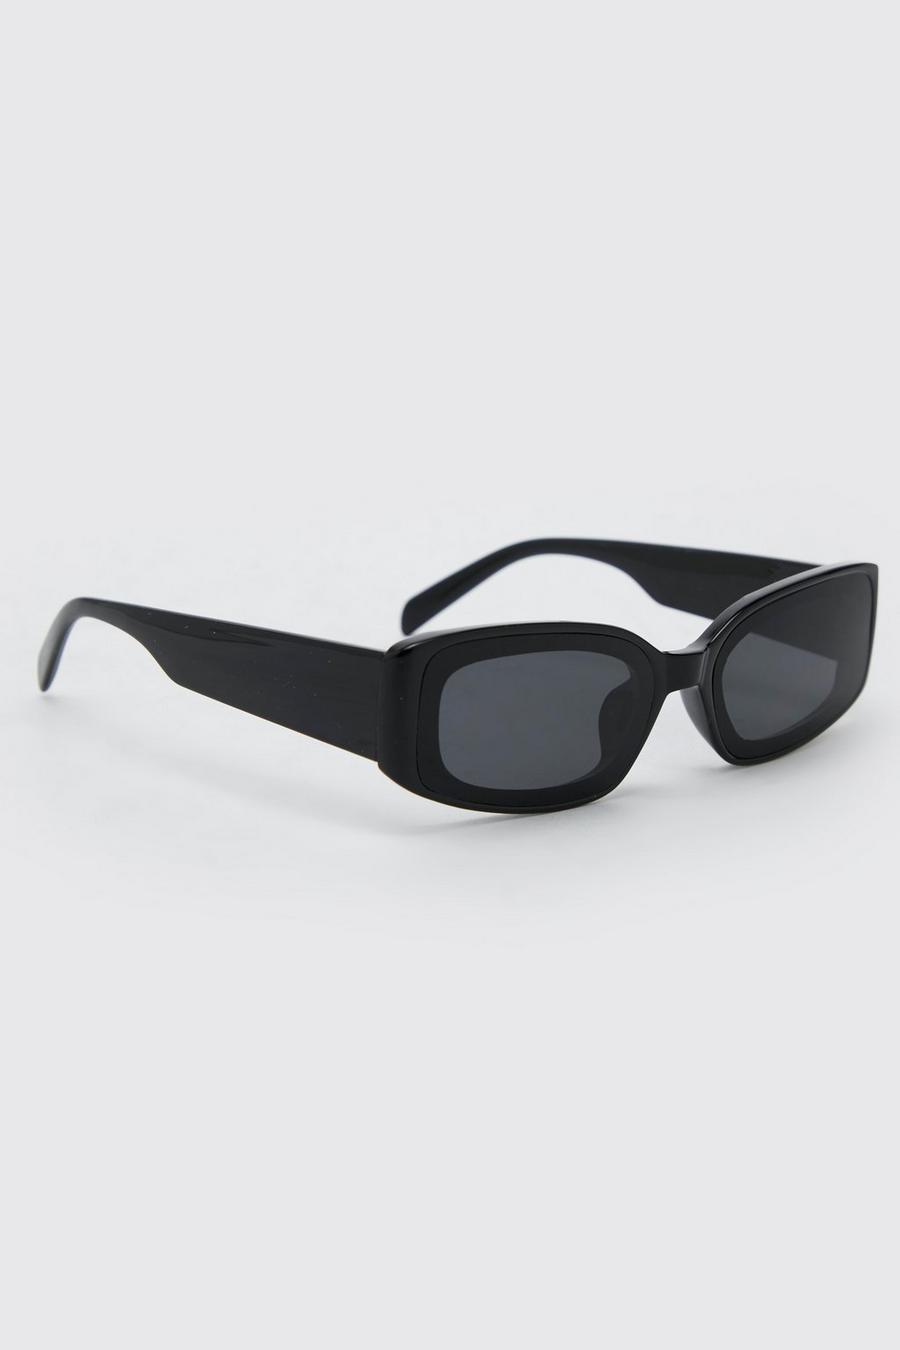 Gafas de sol rectangulares superpuestas de plástico, Black nero